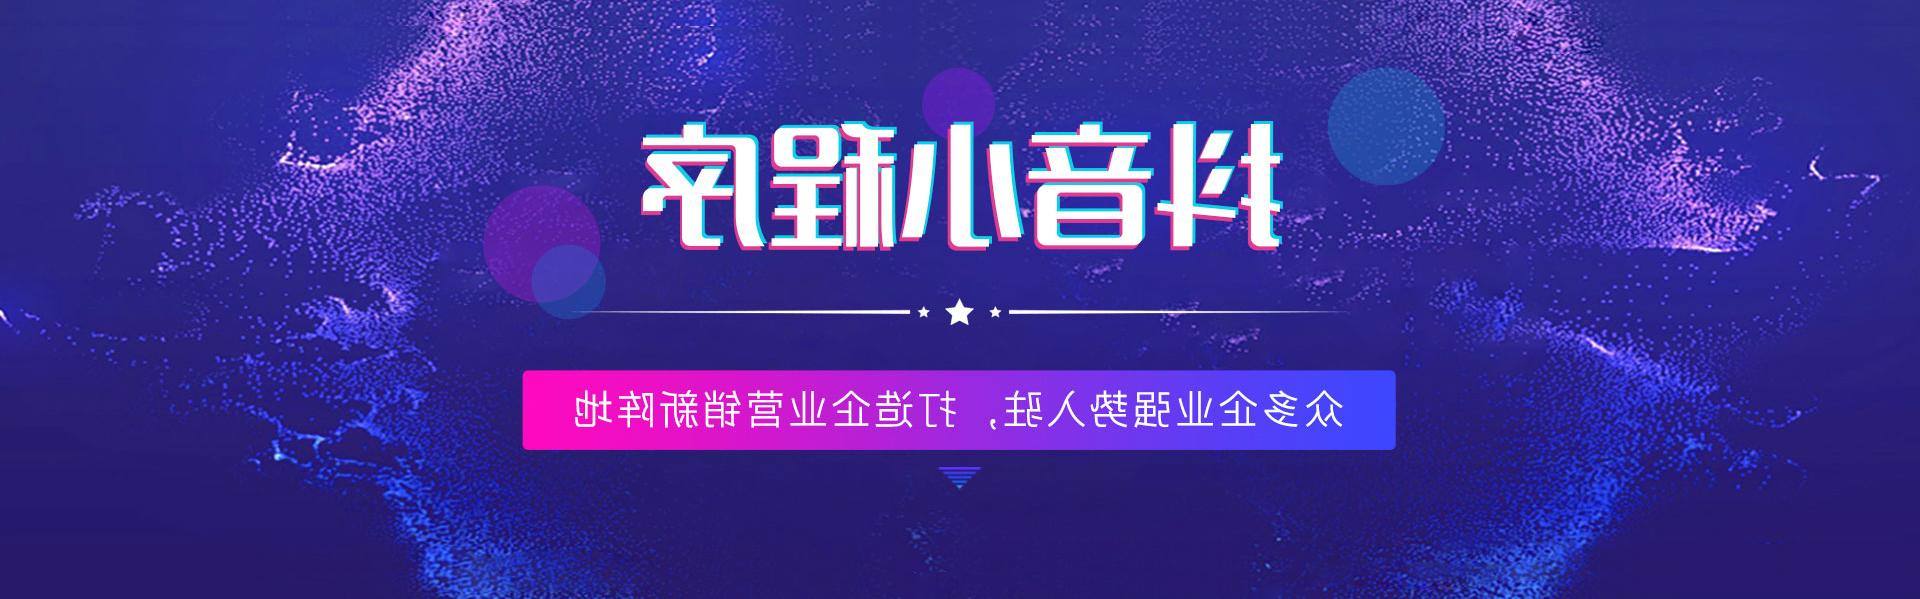 徐州抖音世界杯足彩app,打造企业营销新阵地